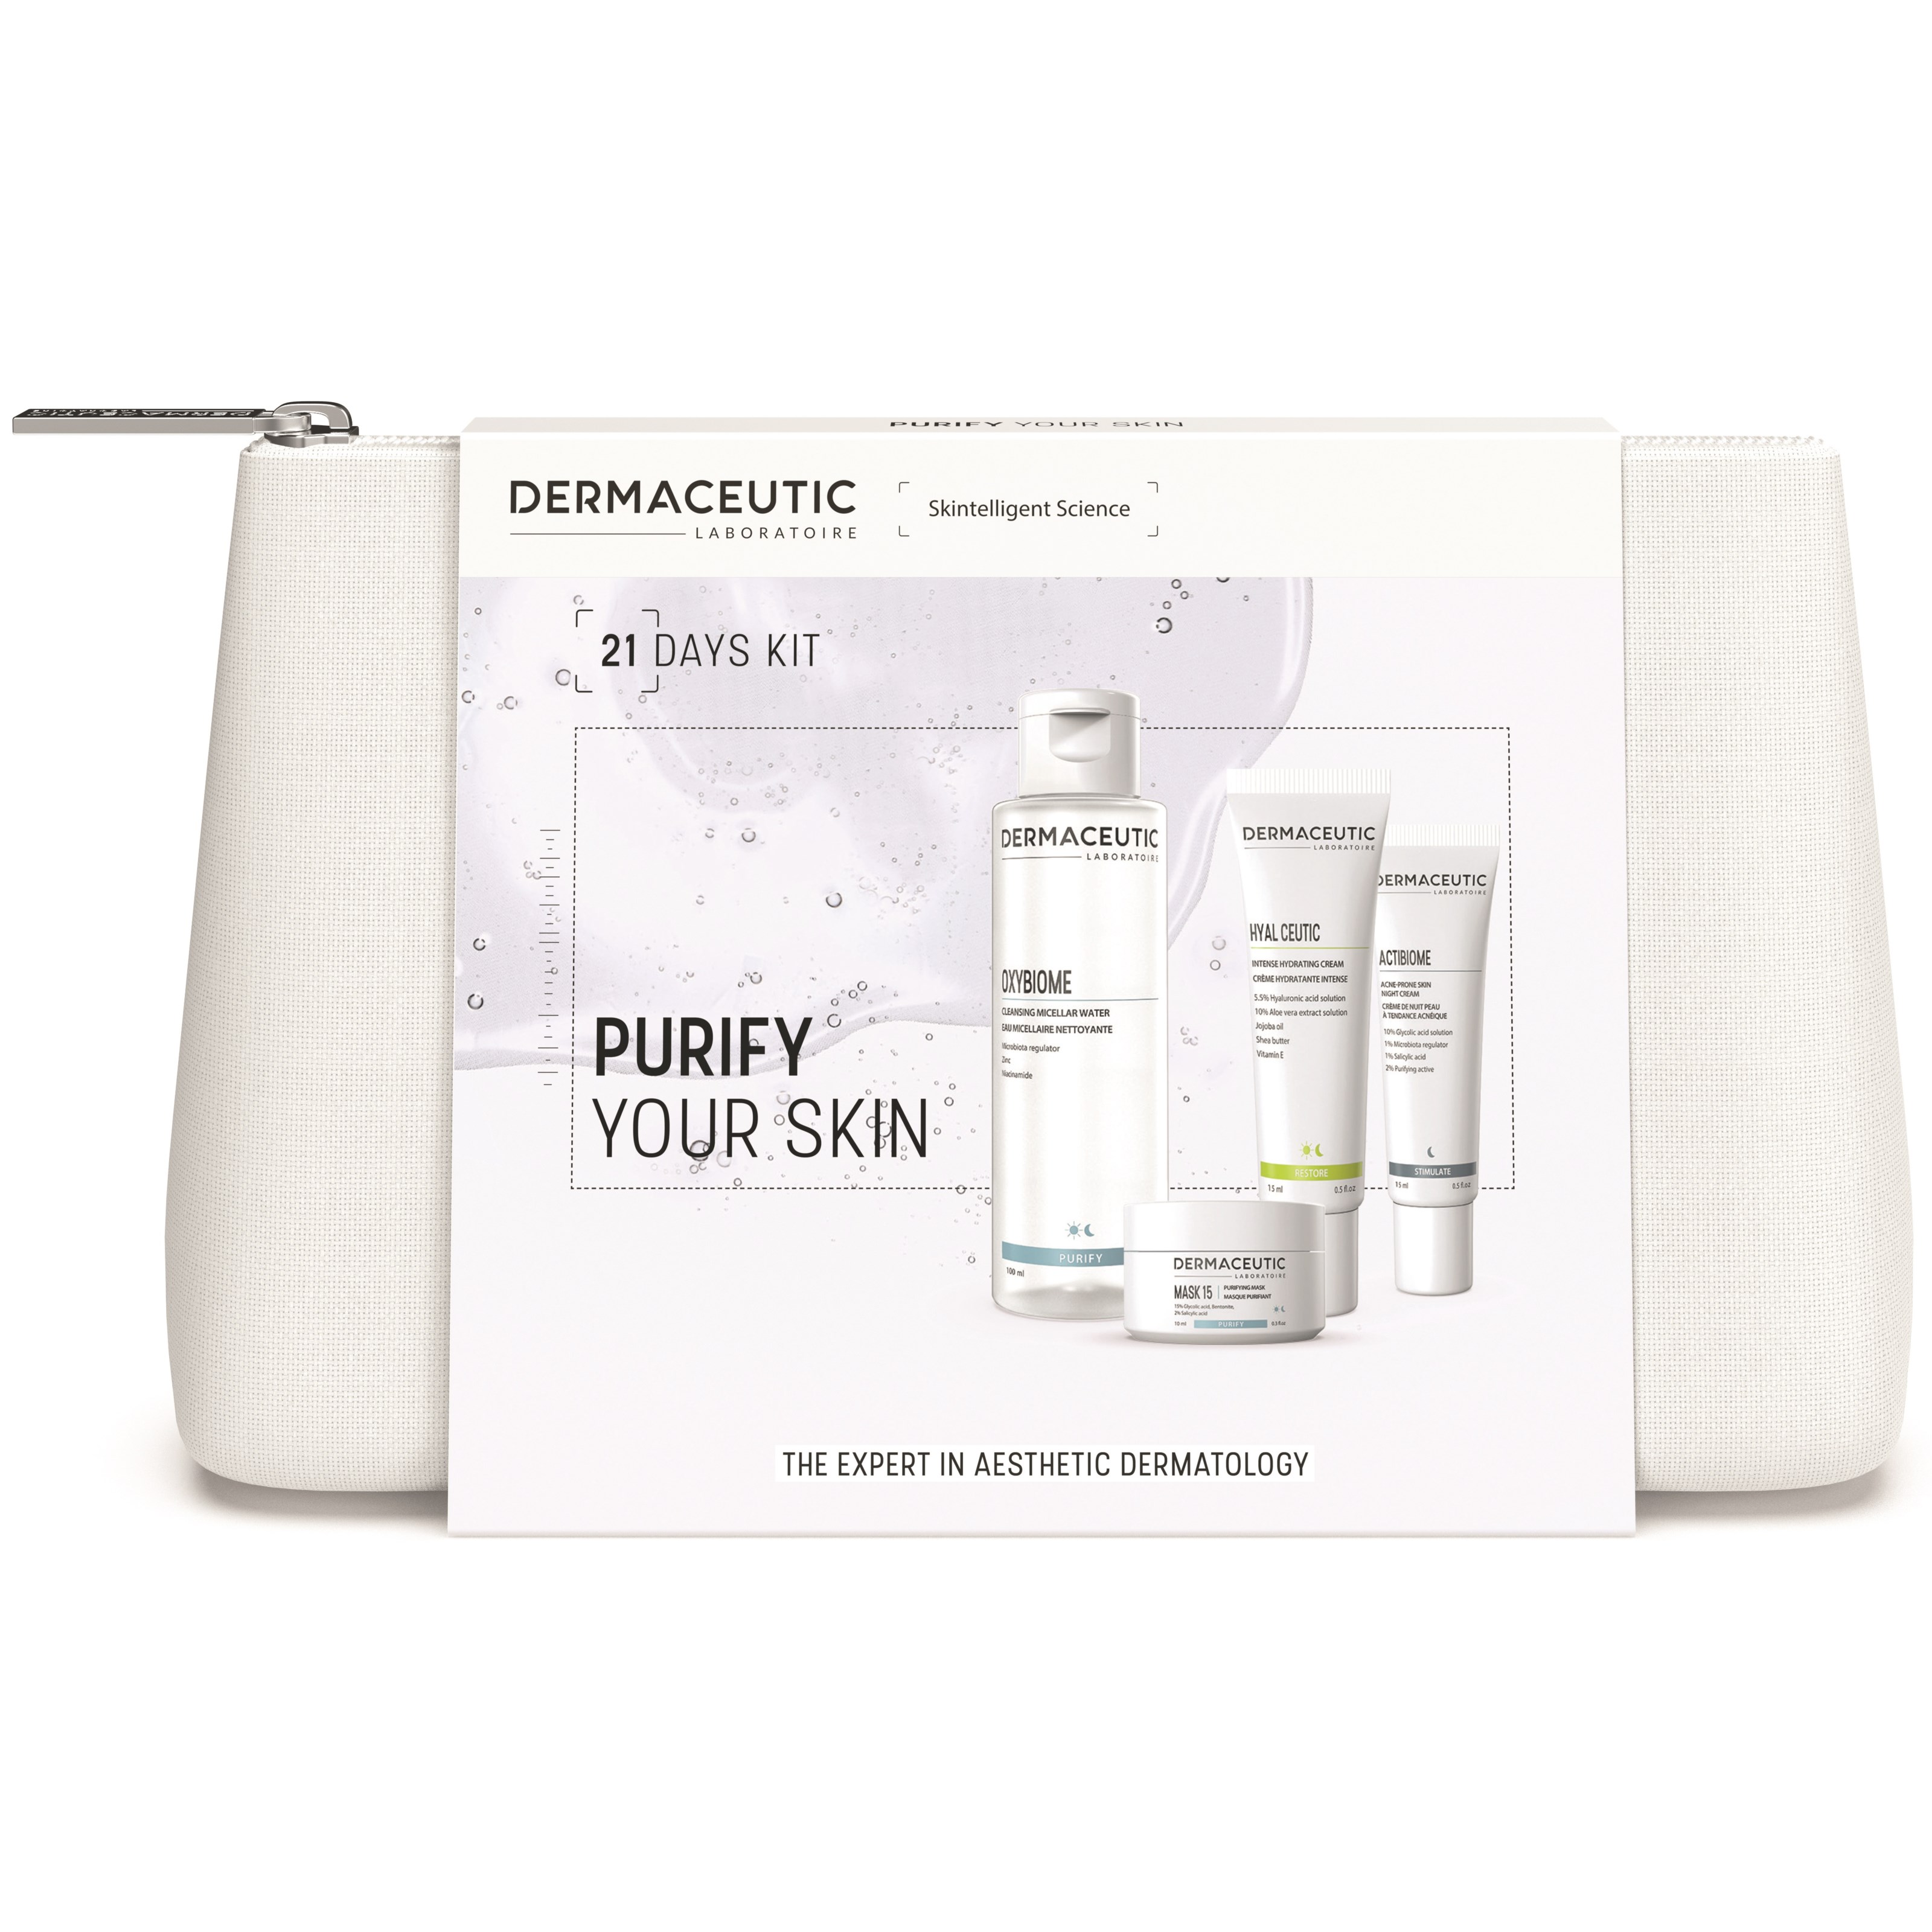 Bilde av Dermaceutic 21 Days Kit Purify Your Skin